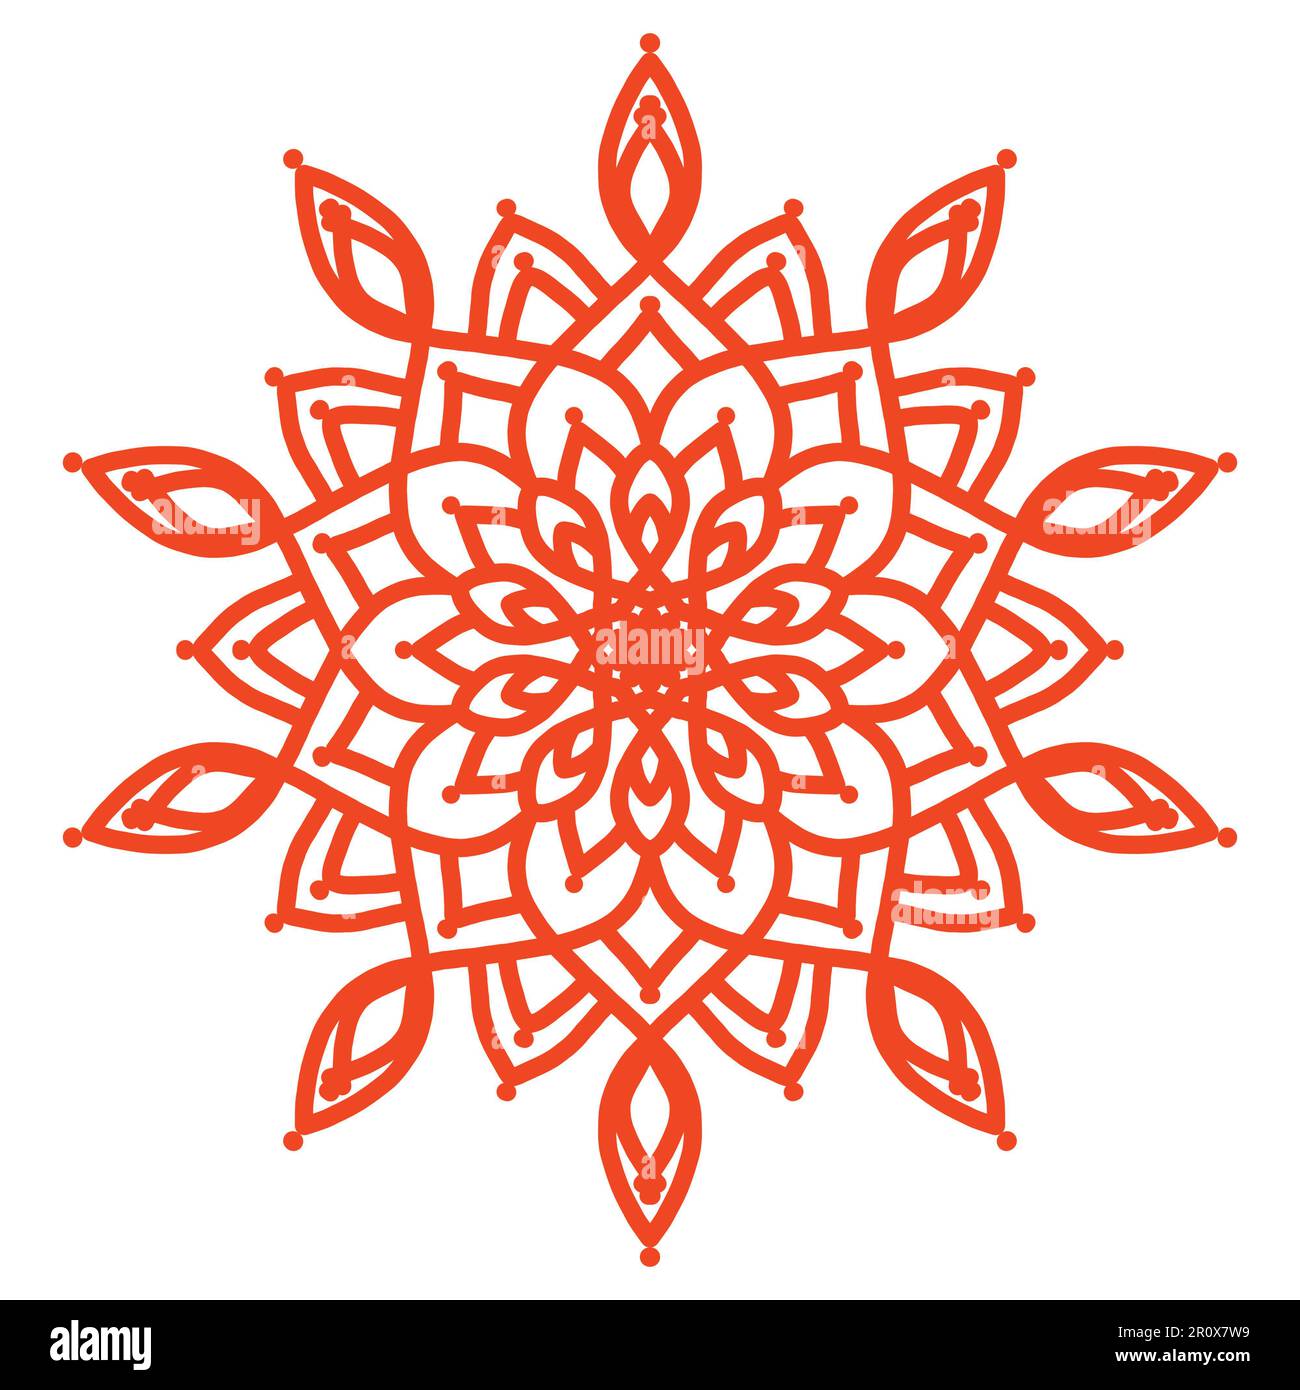 Abstraktes Mandala-Blumendesign, Mandala-Kunstdesign, das Sie als Hintergrund, Design usw. verwenden können Dieses Mandala hat ein Blumenmotiv. Einfache Kunst, um dich zu erschaffen Stockfoto